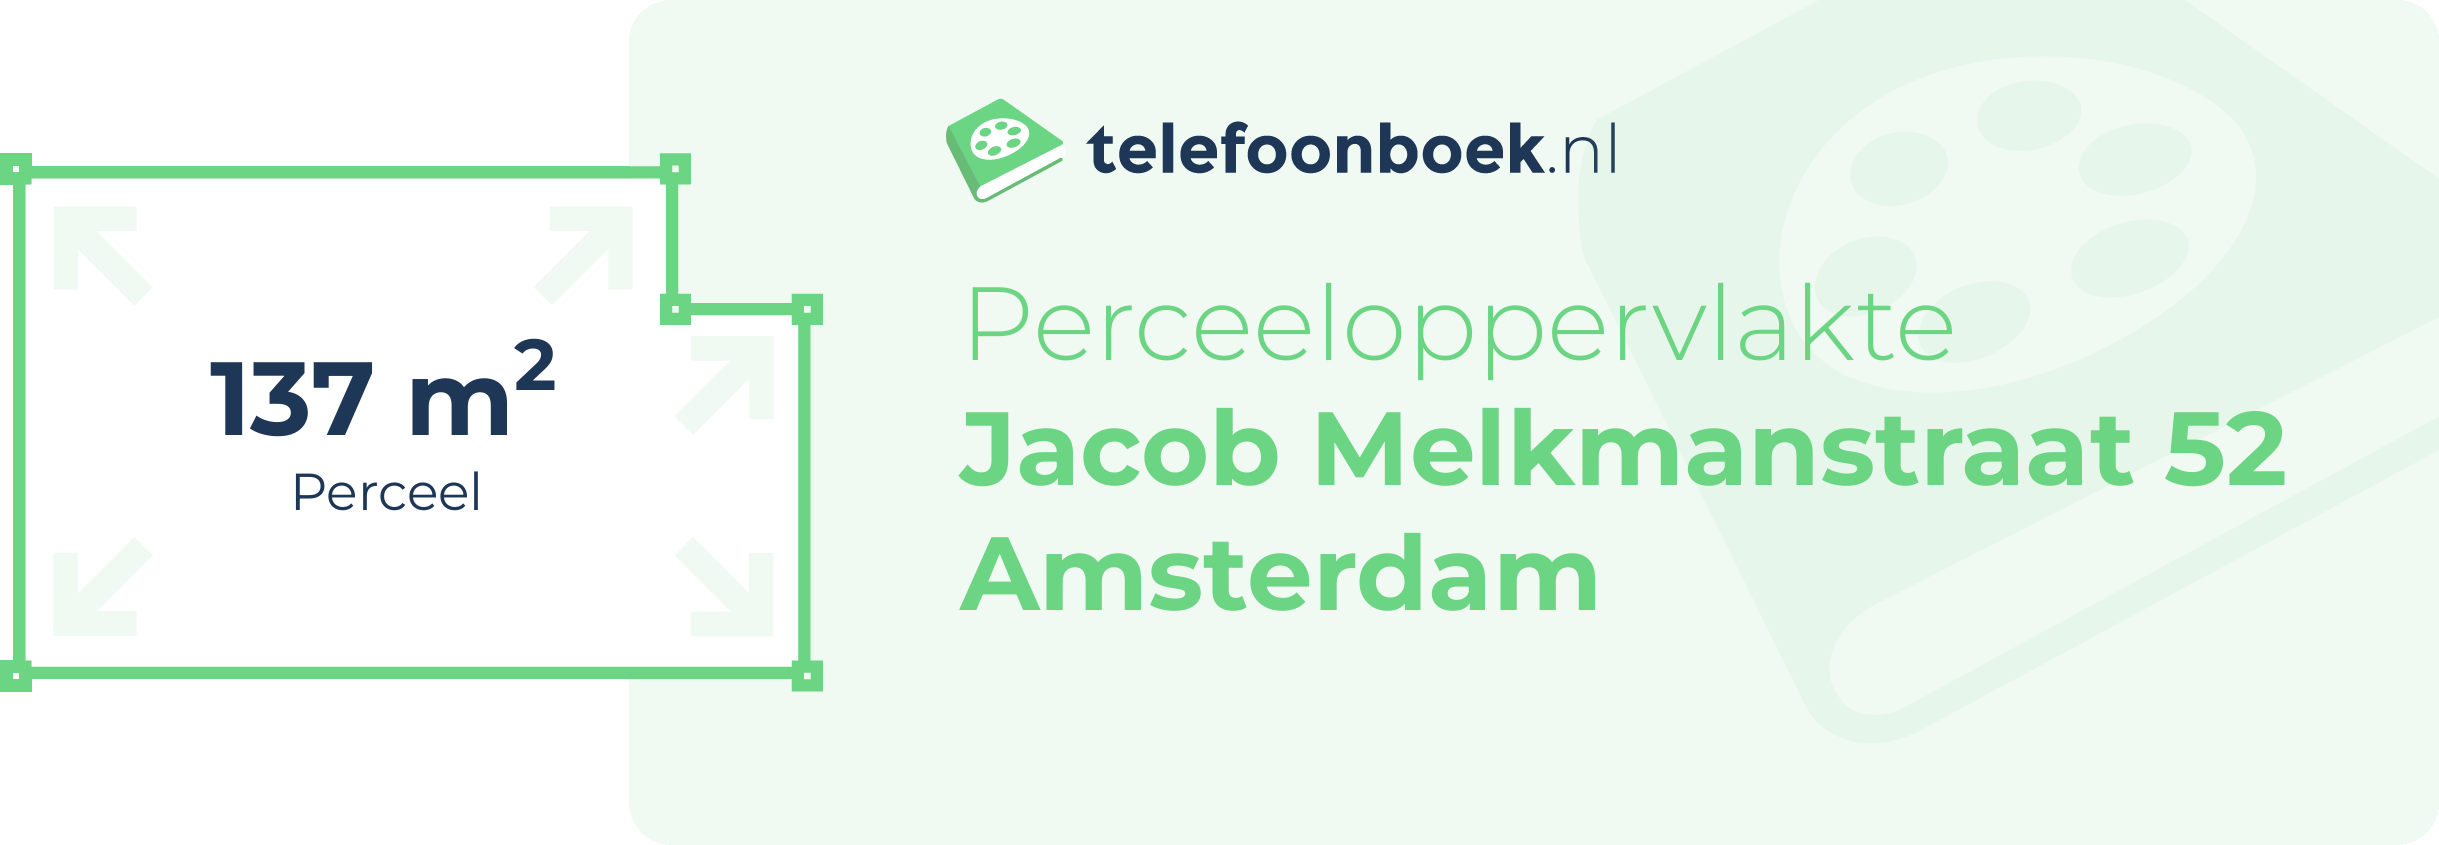 Perceeloppervlakte Jacob Melkmanstraat 52 Amsterdam